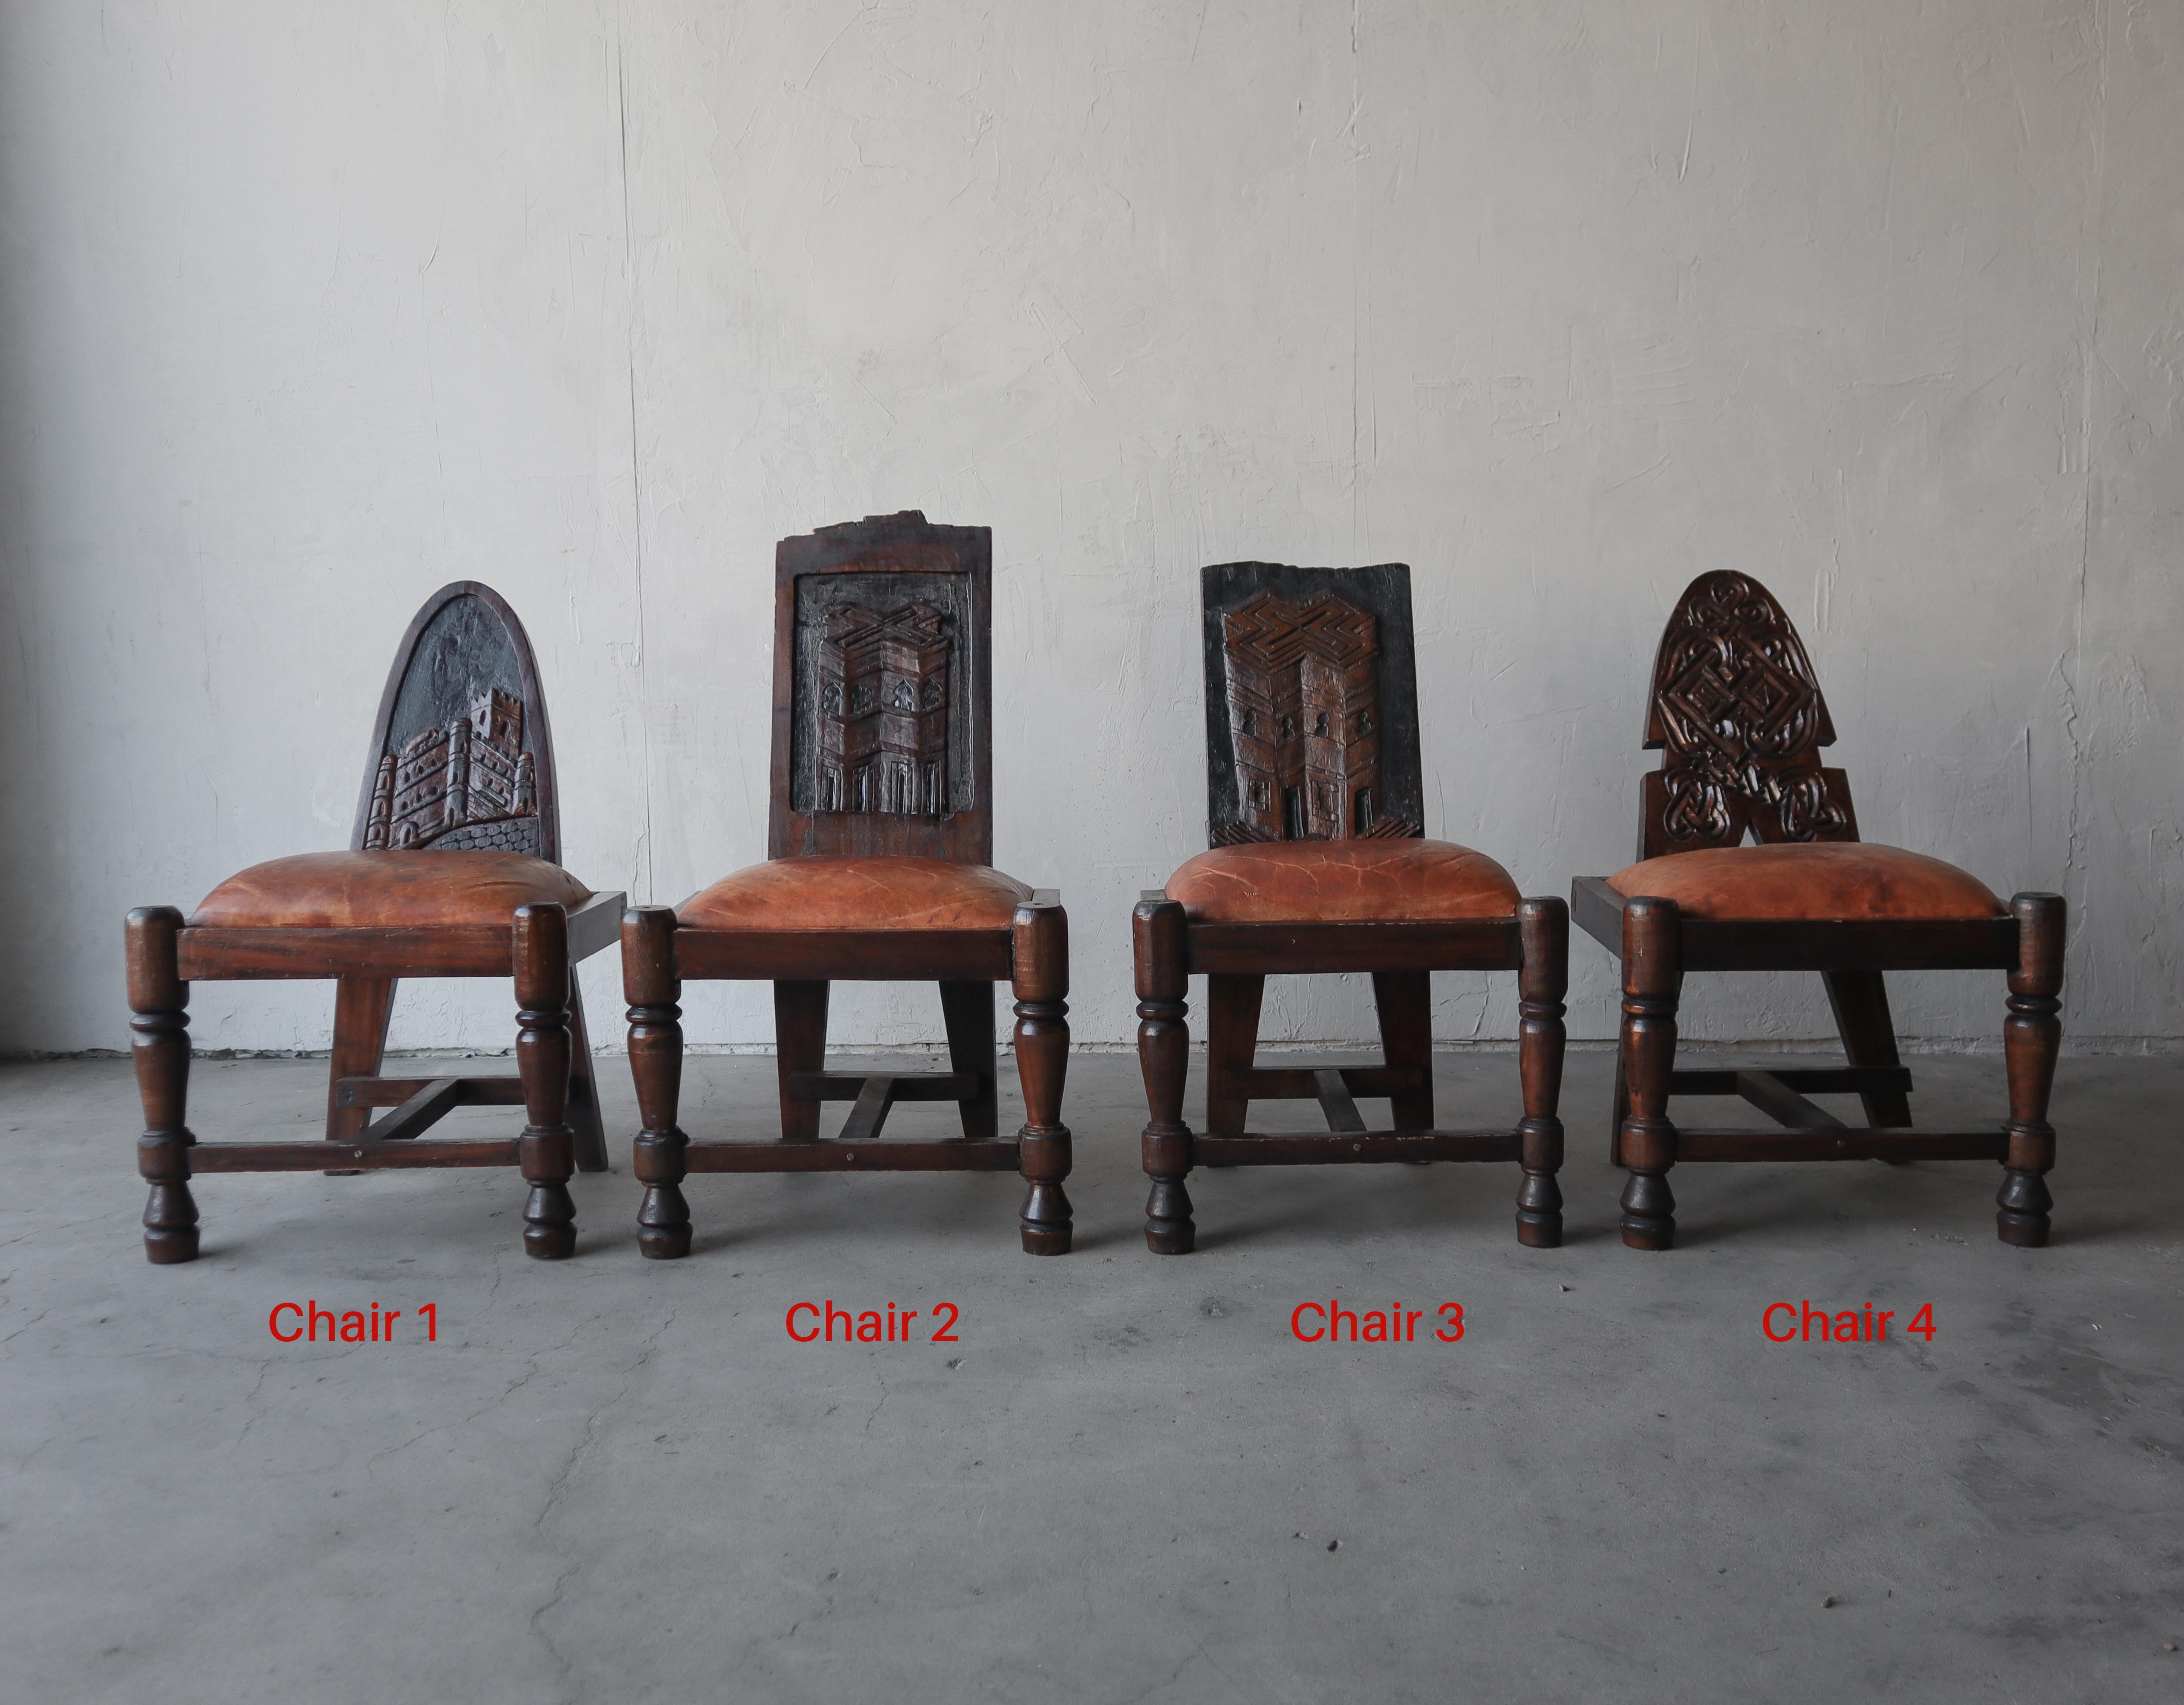 Der Preis gilt pro Stuhl.

Tolle primitive handgefertigte Stühle aus geschnitztem Holz und patiniertem Leder. Perfekte Akzentteile. 

Diese Stühle sind super alt mit all diesen tollen primitiven Details. Das Leder ist schön patiniert und die